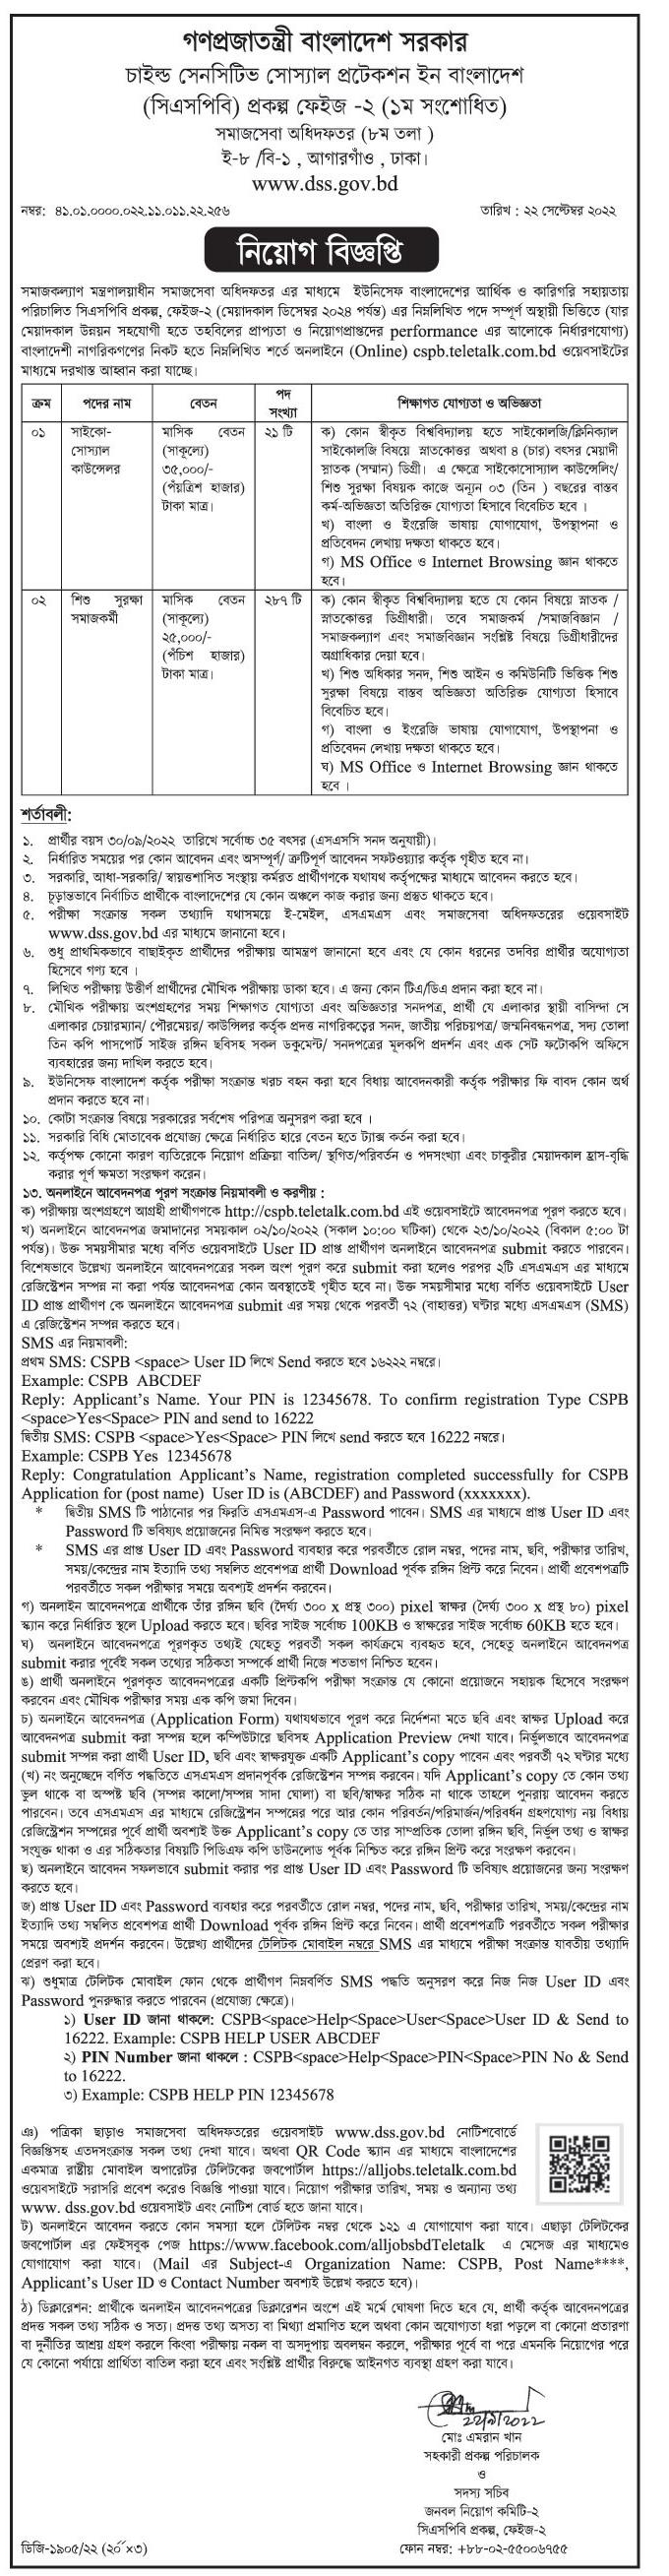 DSS Job Circular 2022 - dss.teletalk.com.bd Apply Online Department Of Social Services 